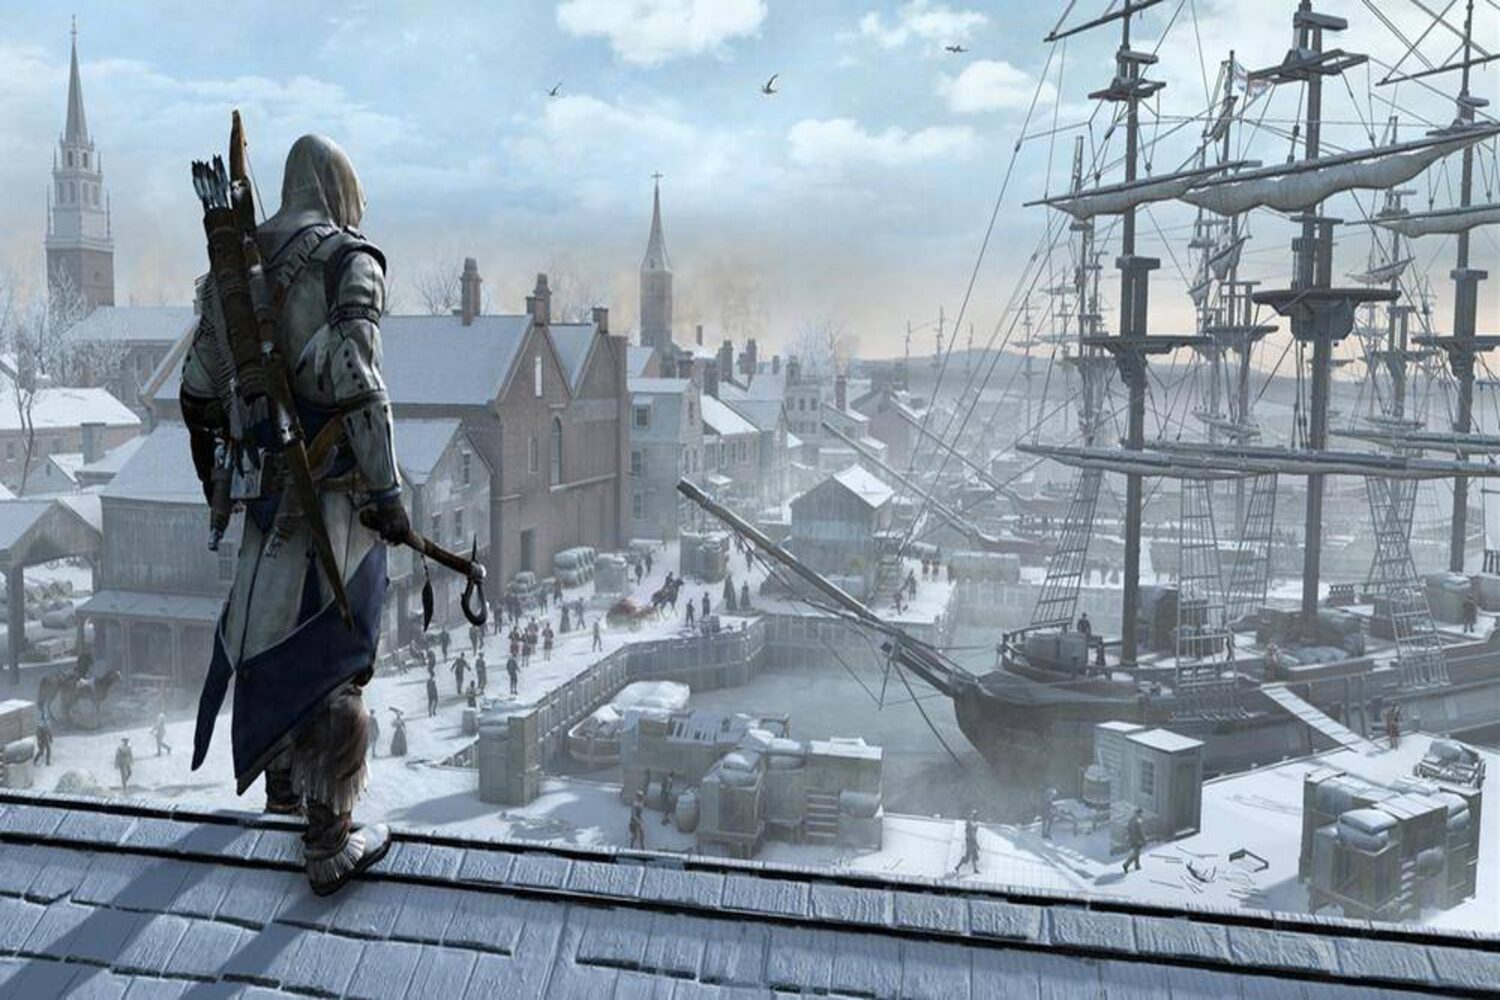 Main story, Assassin's Creed Rogue